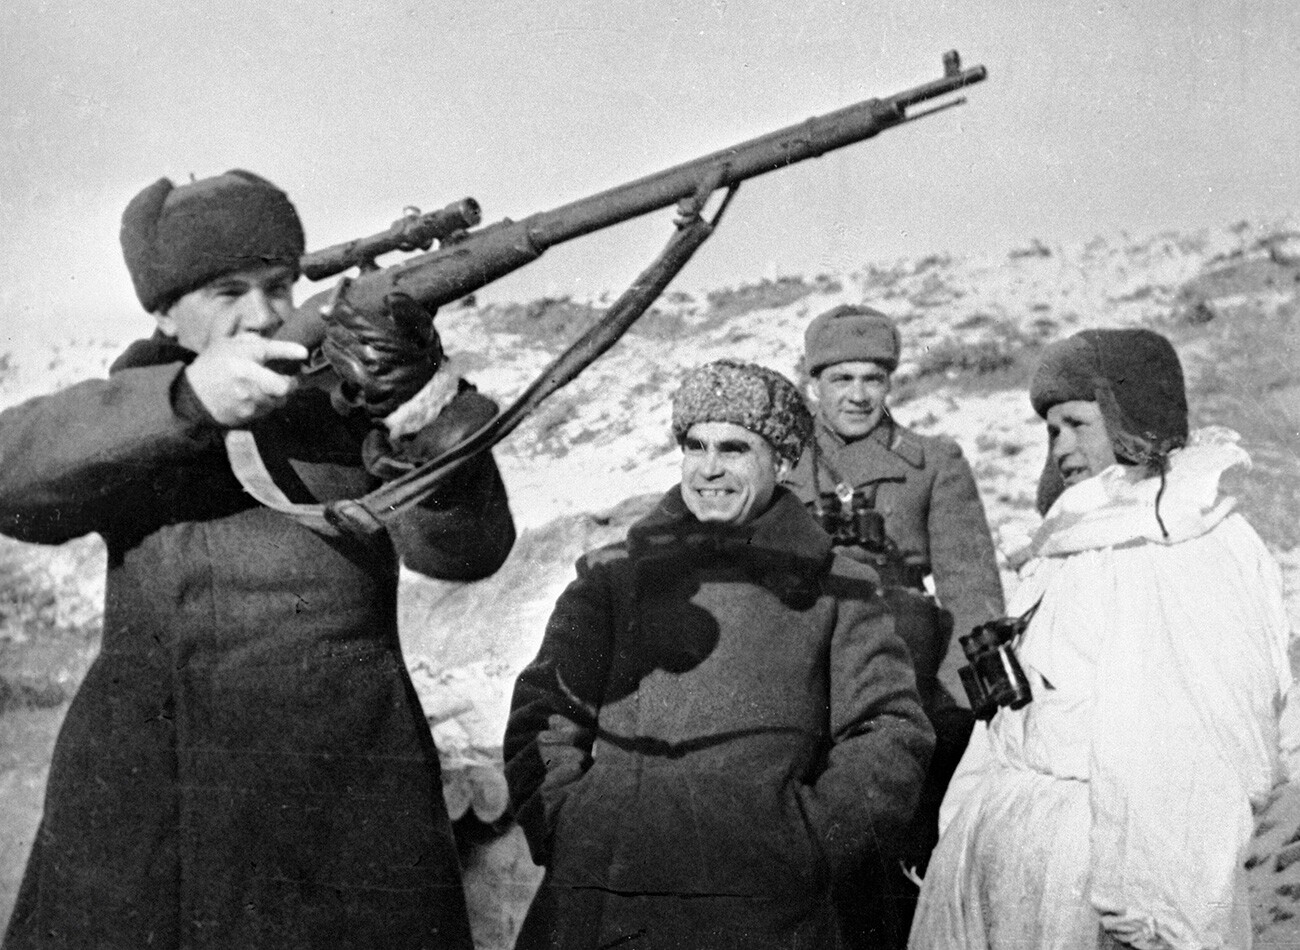 Kusma Gurow, Mitglied des Militärrats der 62. Armee (Mitte), und Wassilij Tschujkow, Kommandeur der 62. Armee (links mit Gewehr), untersuchen die Waffe des Scharfschützen Wassilij Sajzew.